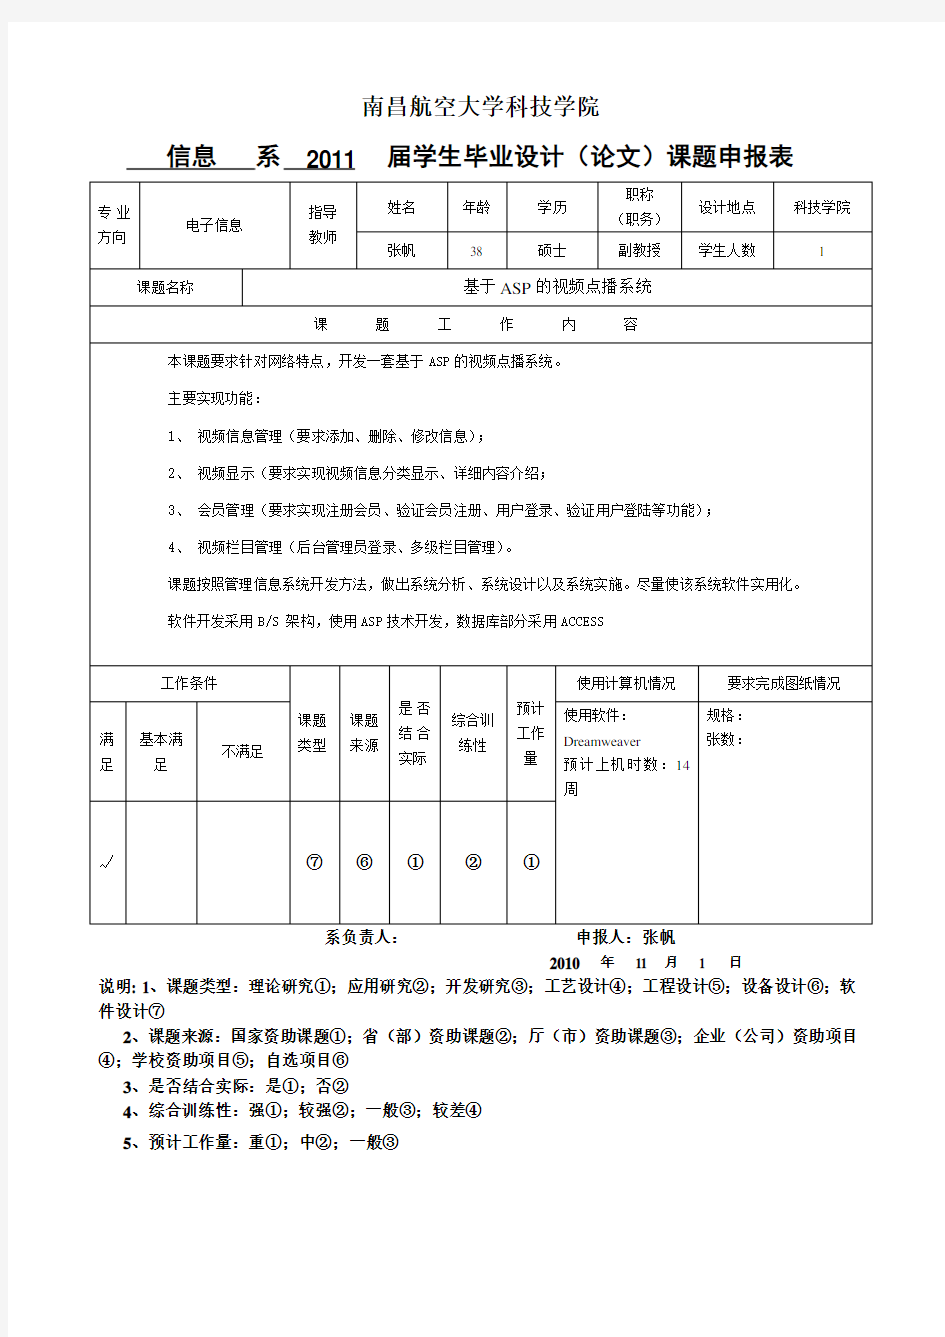 南昌航空大学科技学院毕业设计(论文)课题申报表